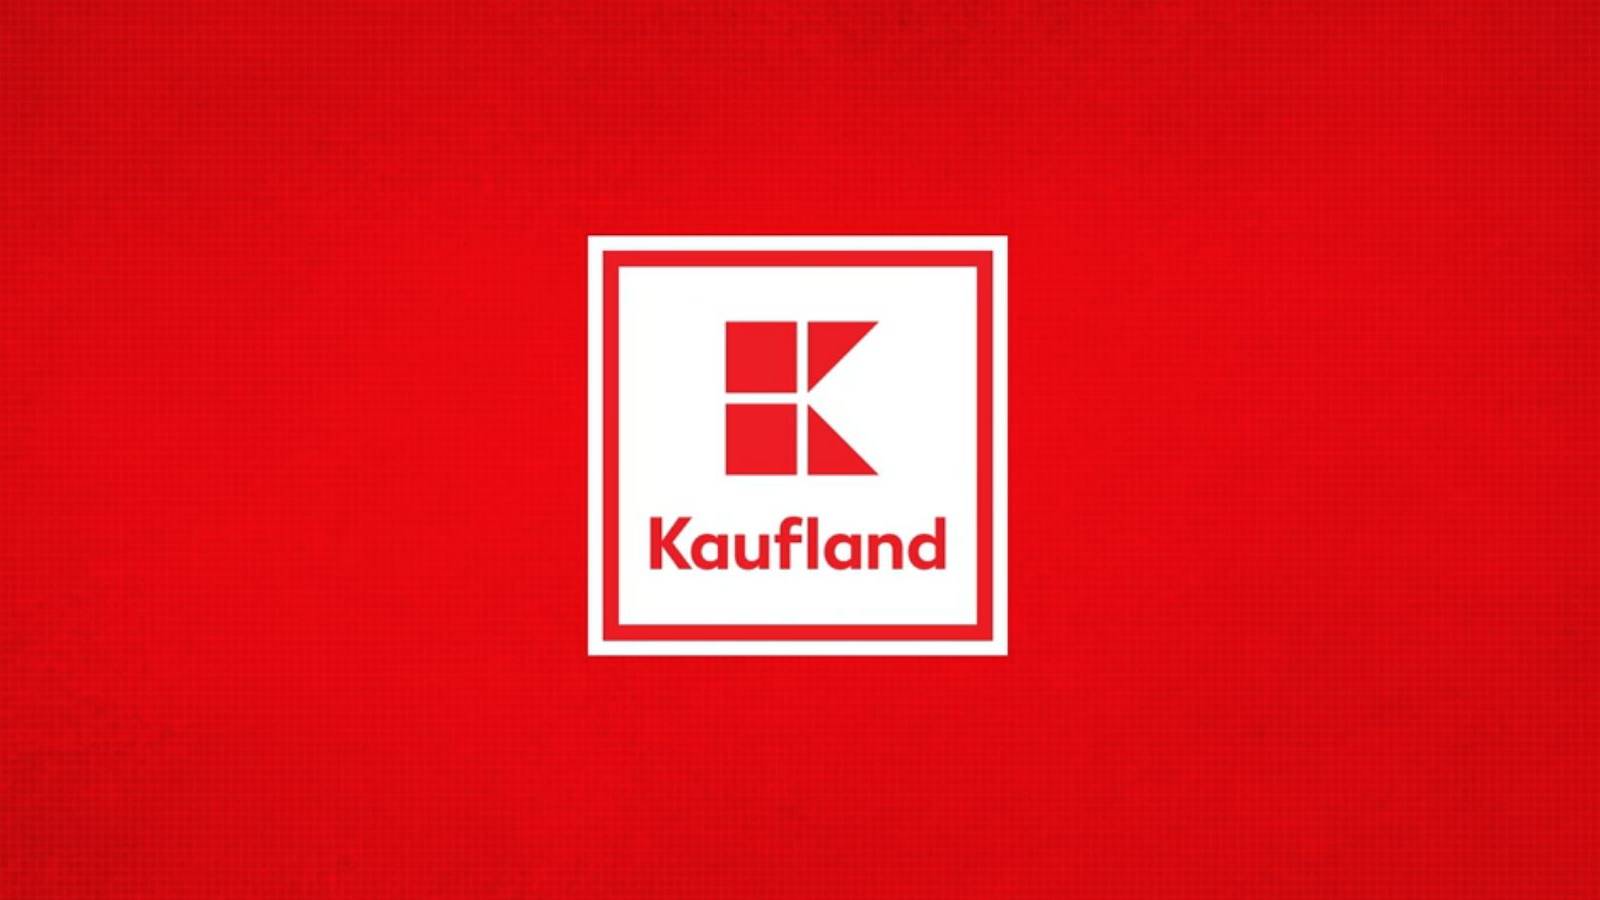 Clientes de Kaufland informados OFICIALMENTE Muchos rumanos no conocían la tarjeta de fidelidad